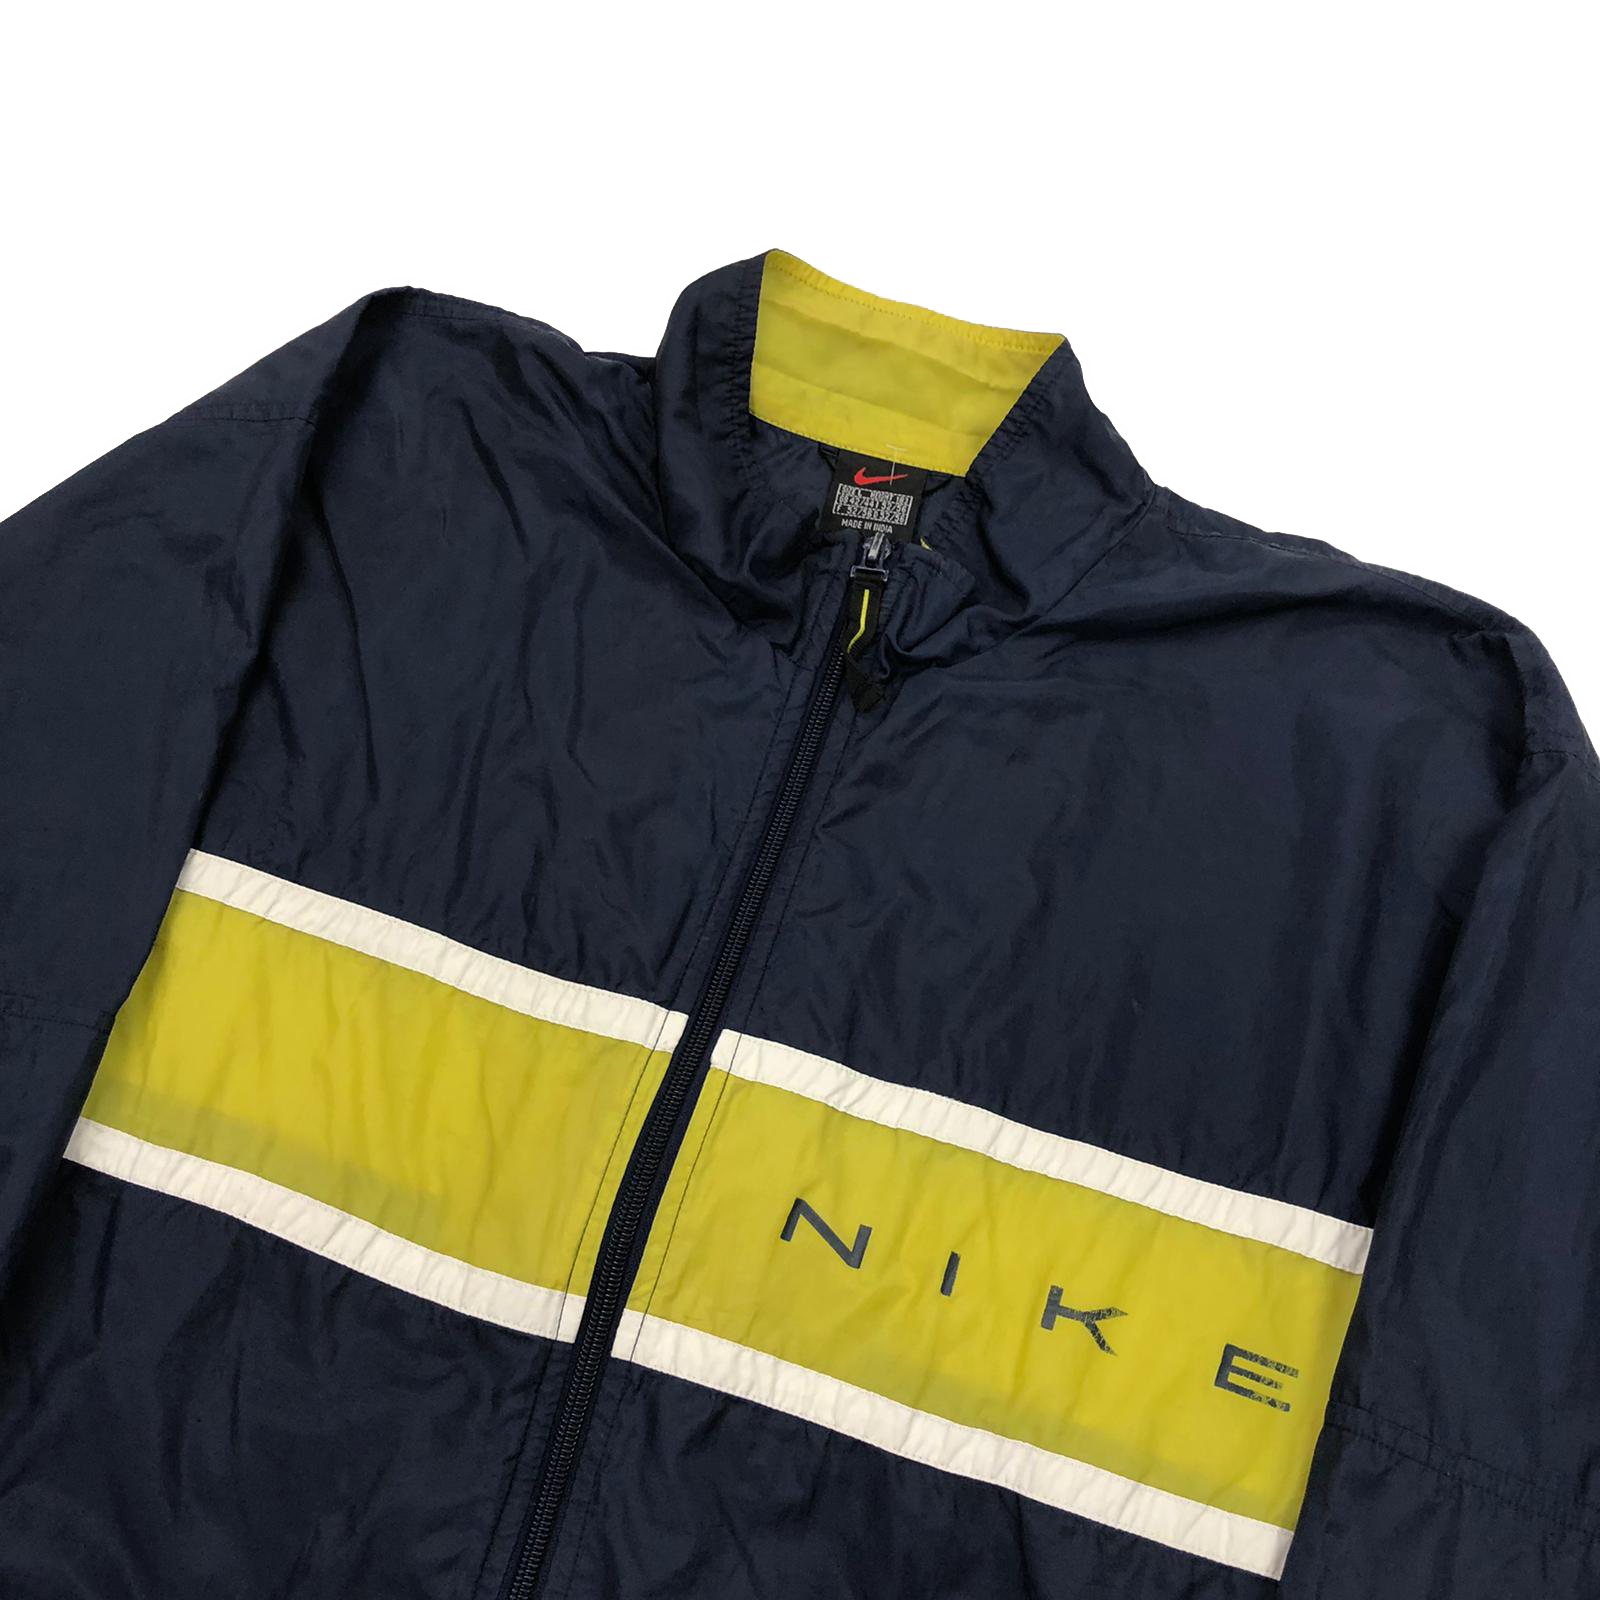 90's Nike windbreaker